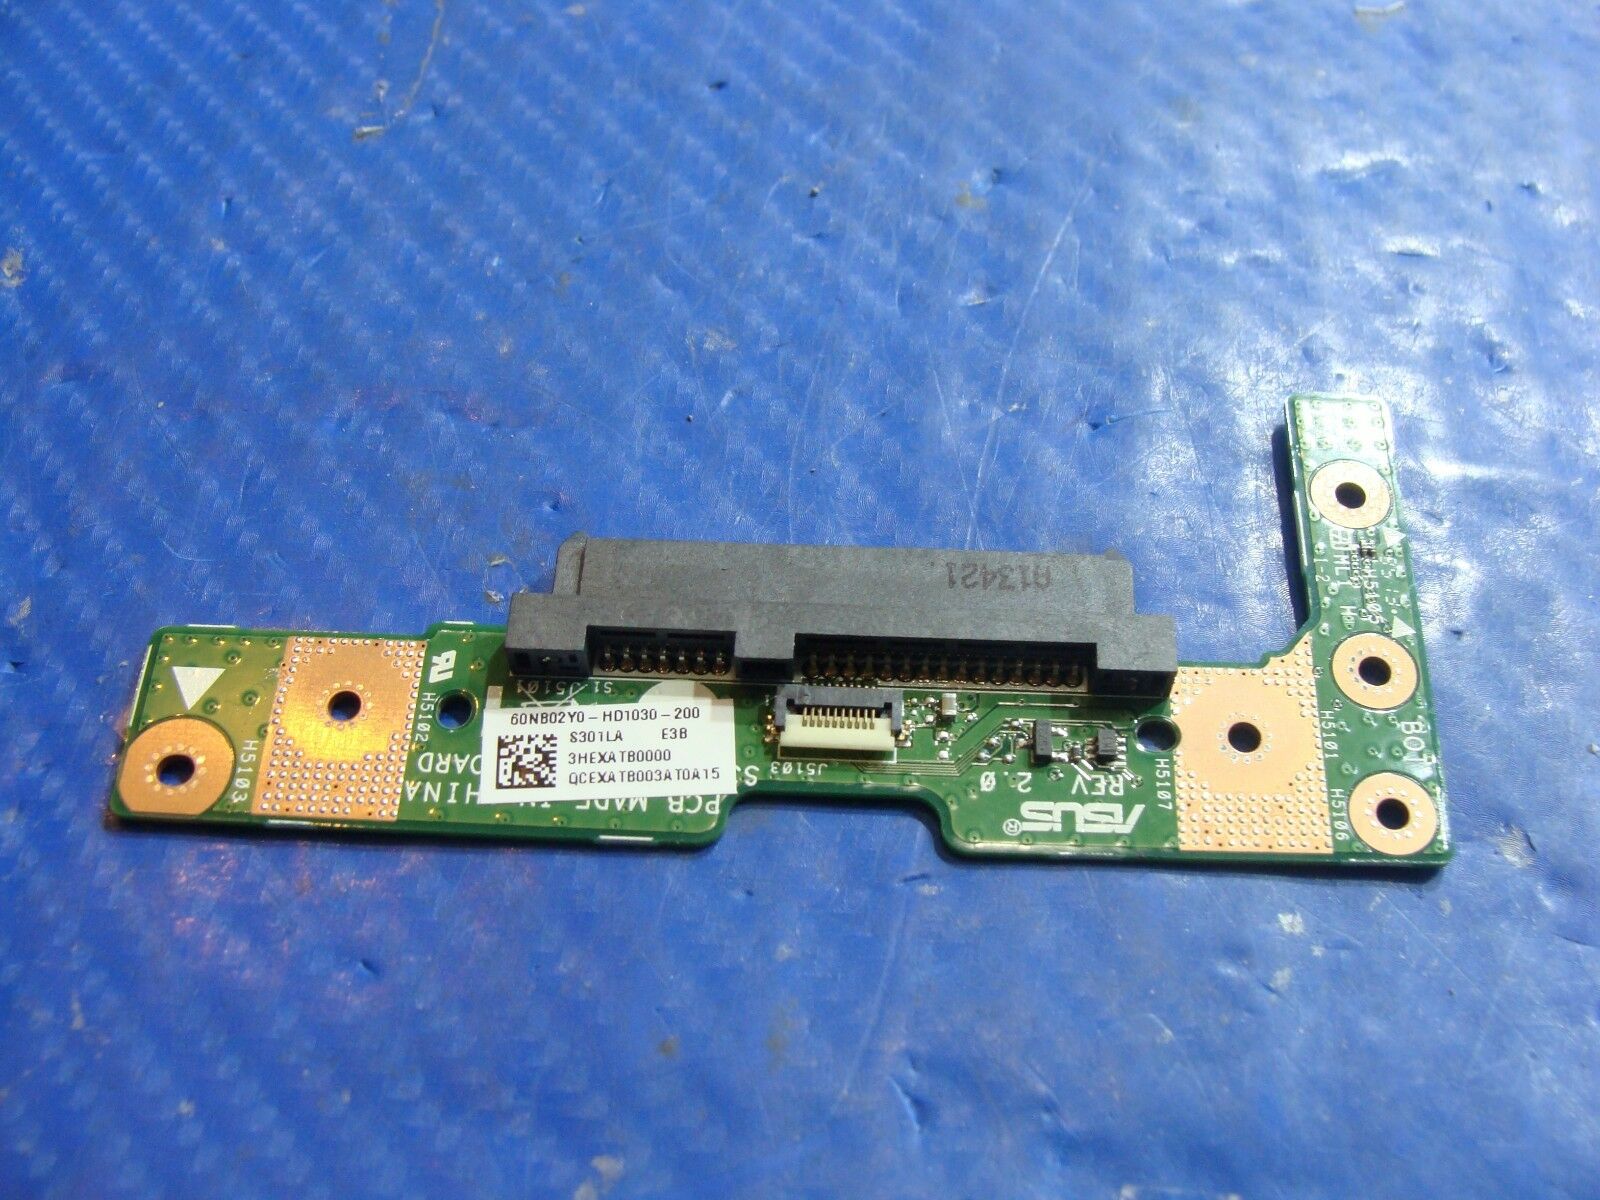 Asus Vivobook Q301L 13.3" Genuine Hard Drive Connector Board 60NB02Y0-HD1030-200 ASUS